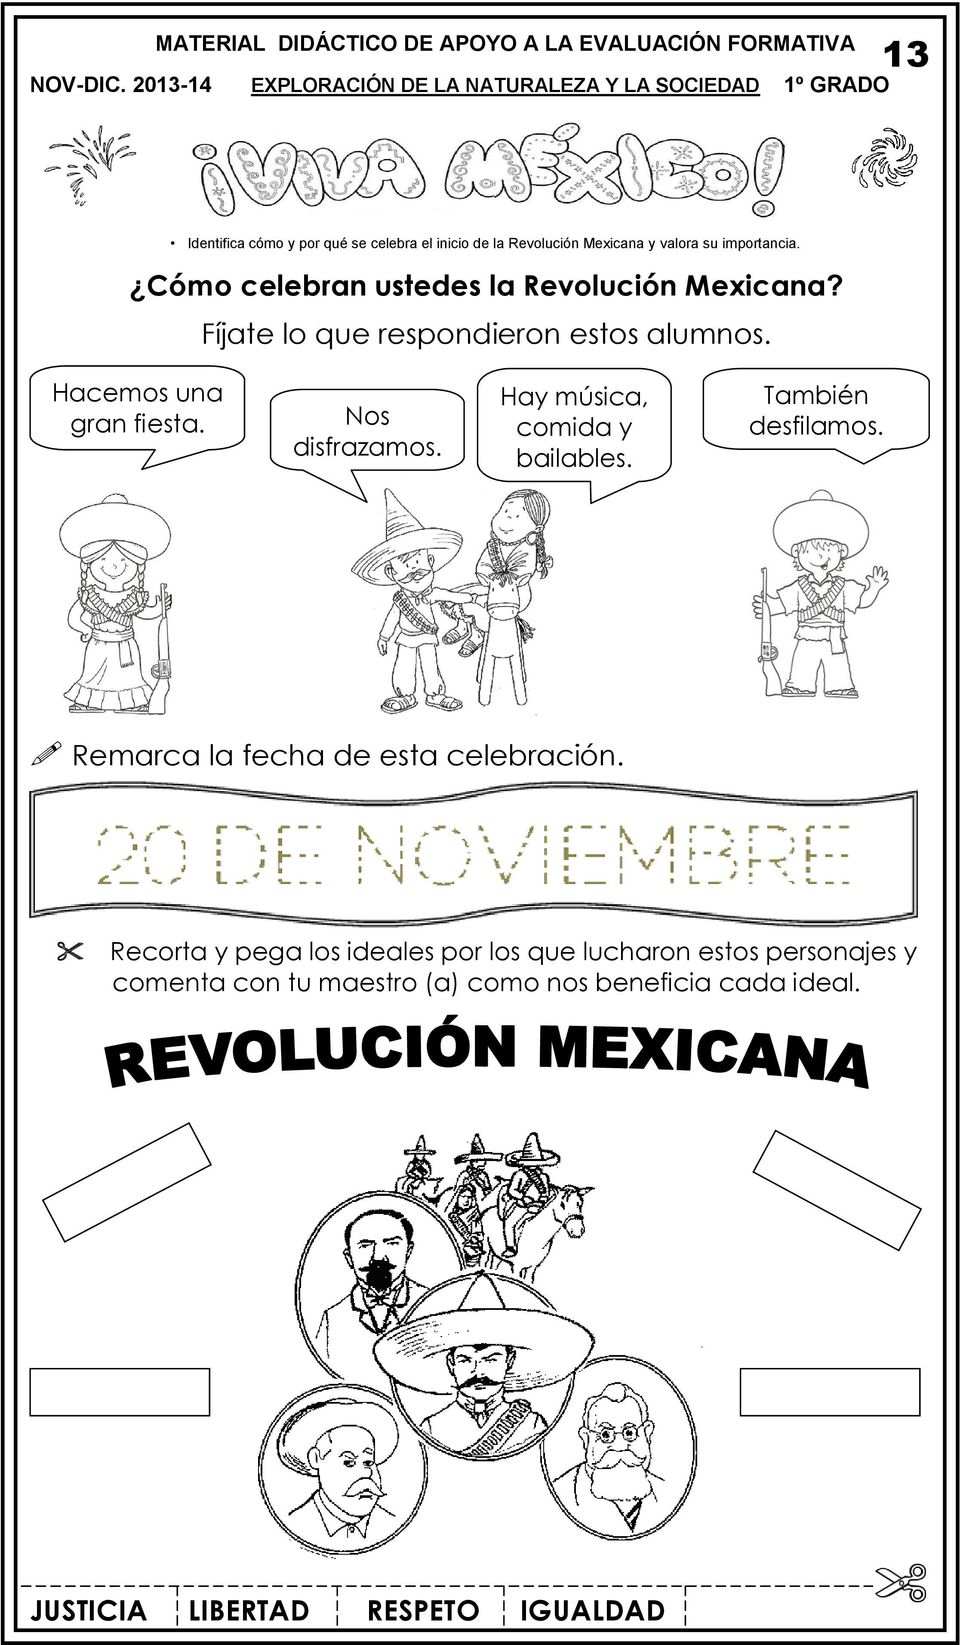 valora su importancia. Cómo celebran ustedes la Revolución Mexicana? Fíjate lo que respondieron estos alumnos. Hacemos una gran fiesta.